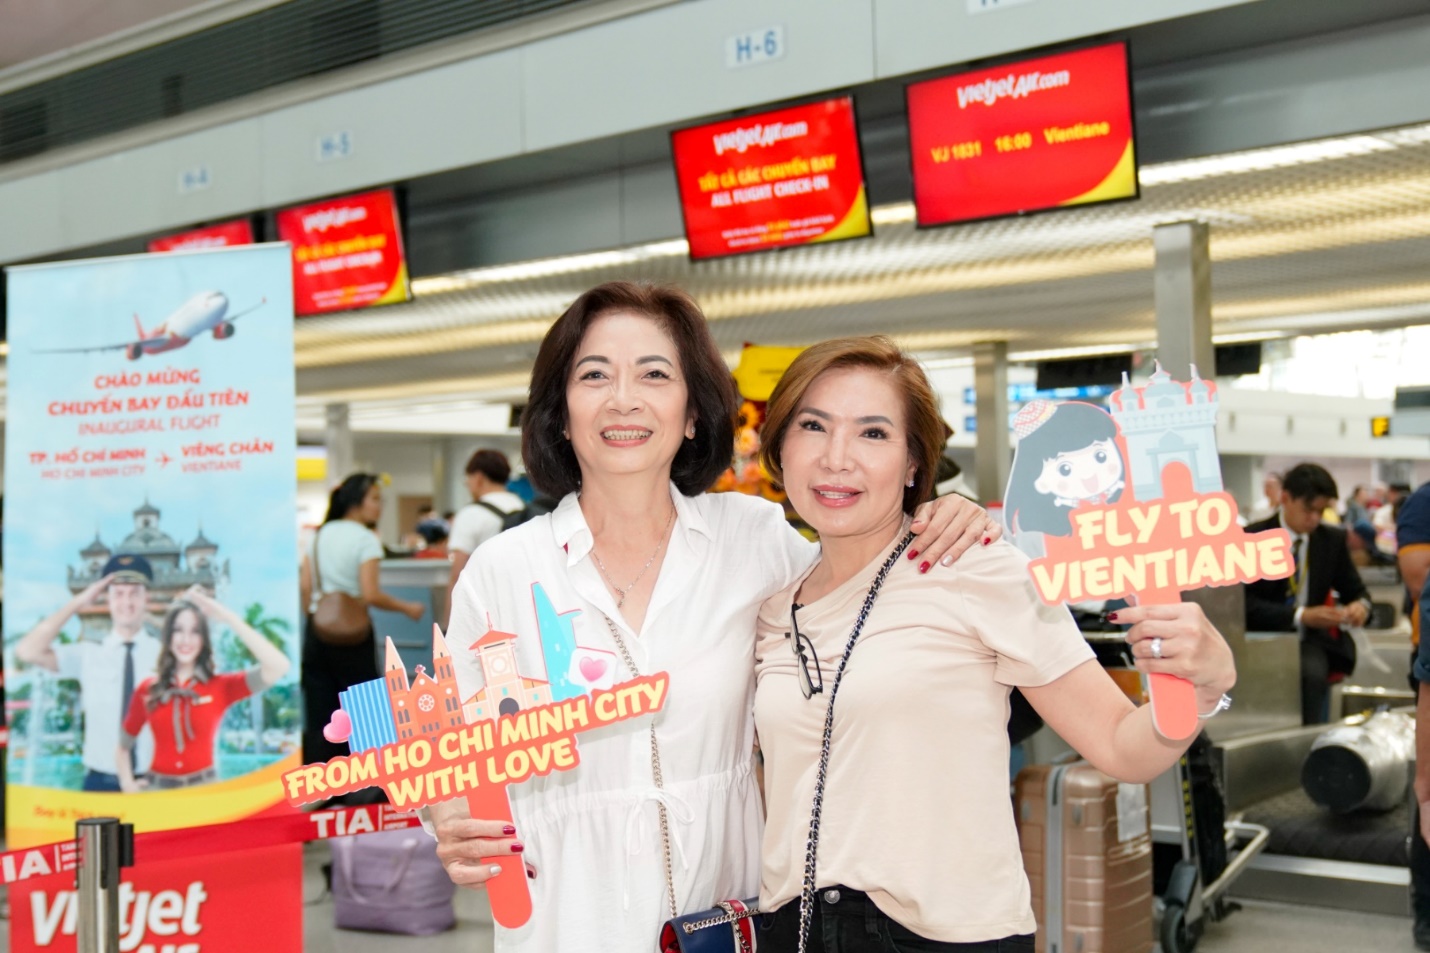 Năm mới rộn ràng, khám phá ngay Viêng Chăn, Lào với đường bay mới của Vietjet - Ảnh 5.